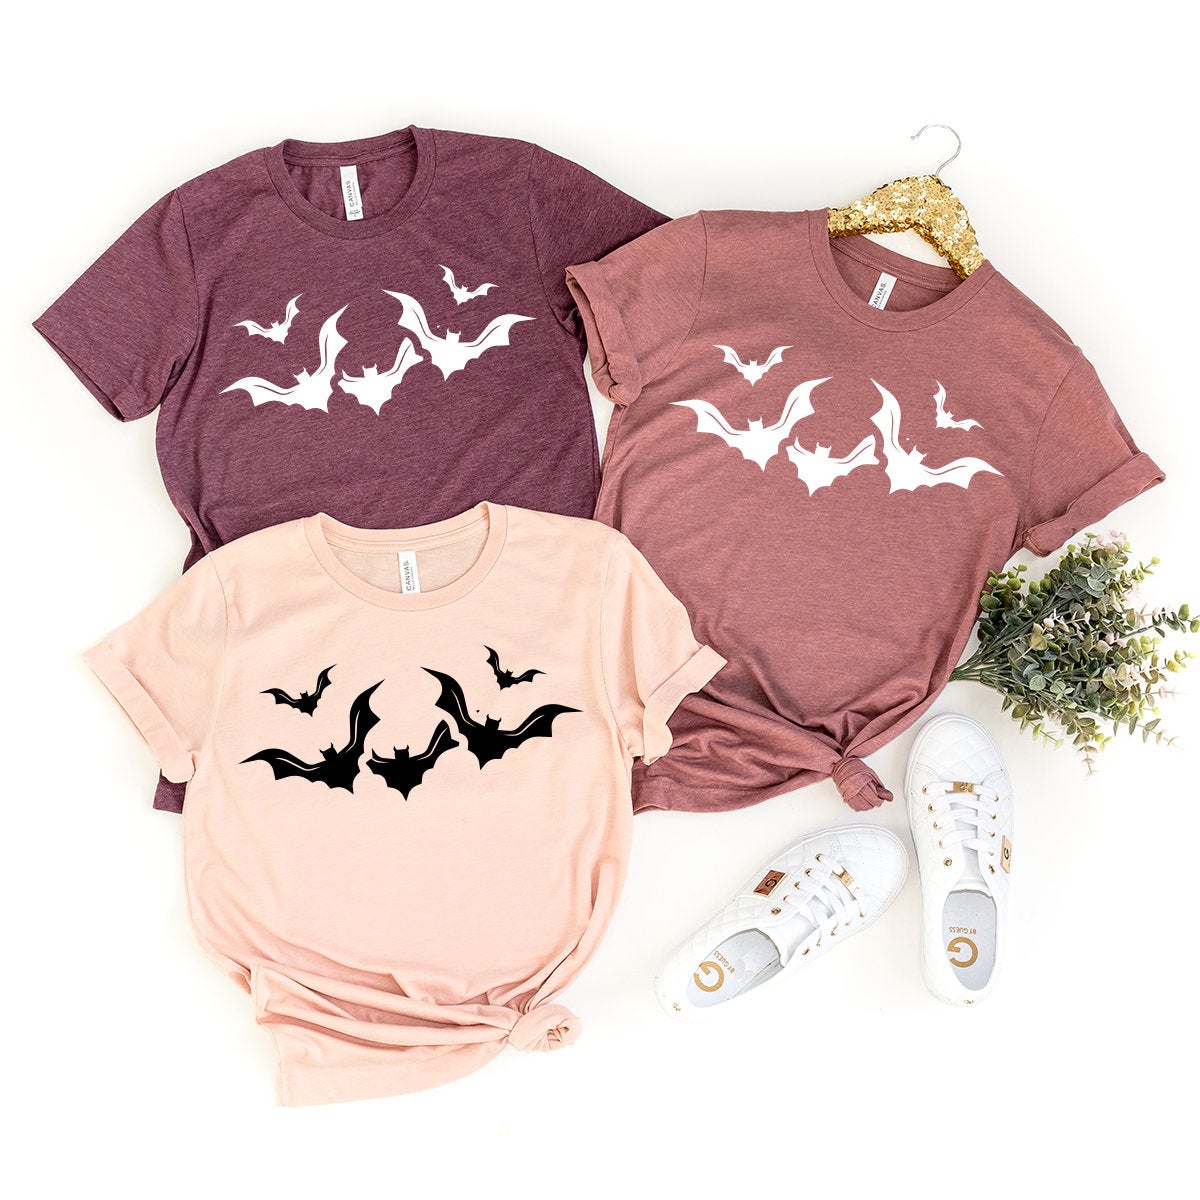 Halloween Bats Shirt, Halloween T-Shirt, Halloween Gift, Fall Shirt, Bats Shirt, Funny Halloween Shirt, Horror Shirt, Flying Bats Shirt - Fastdeliverytees.com